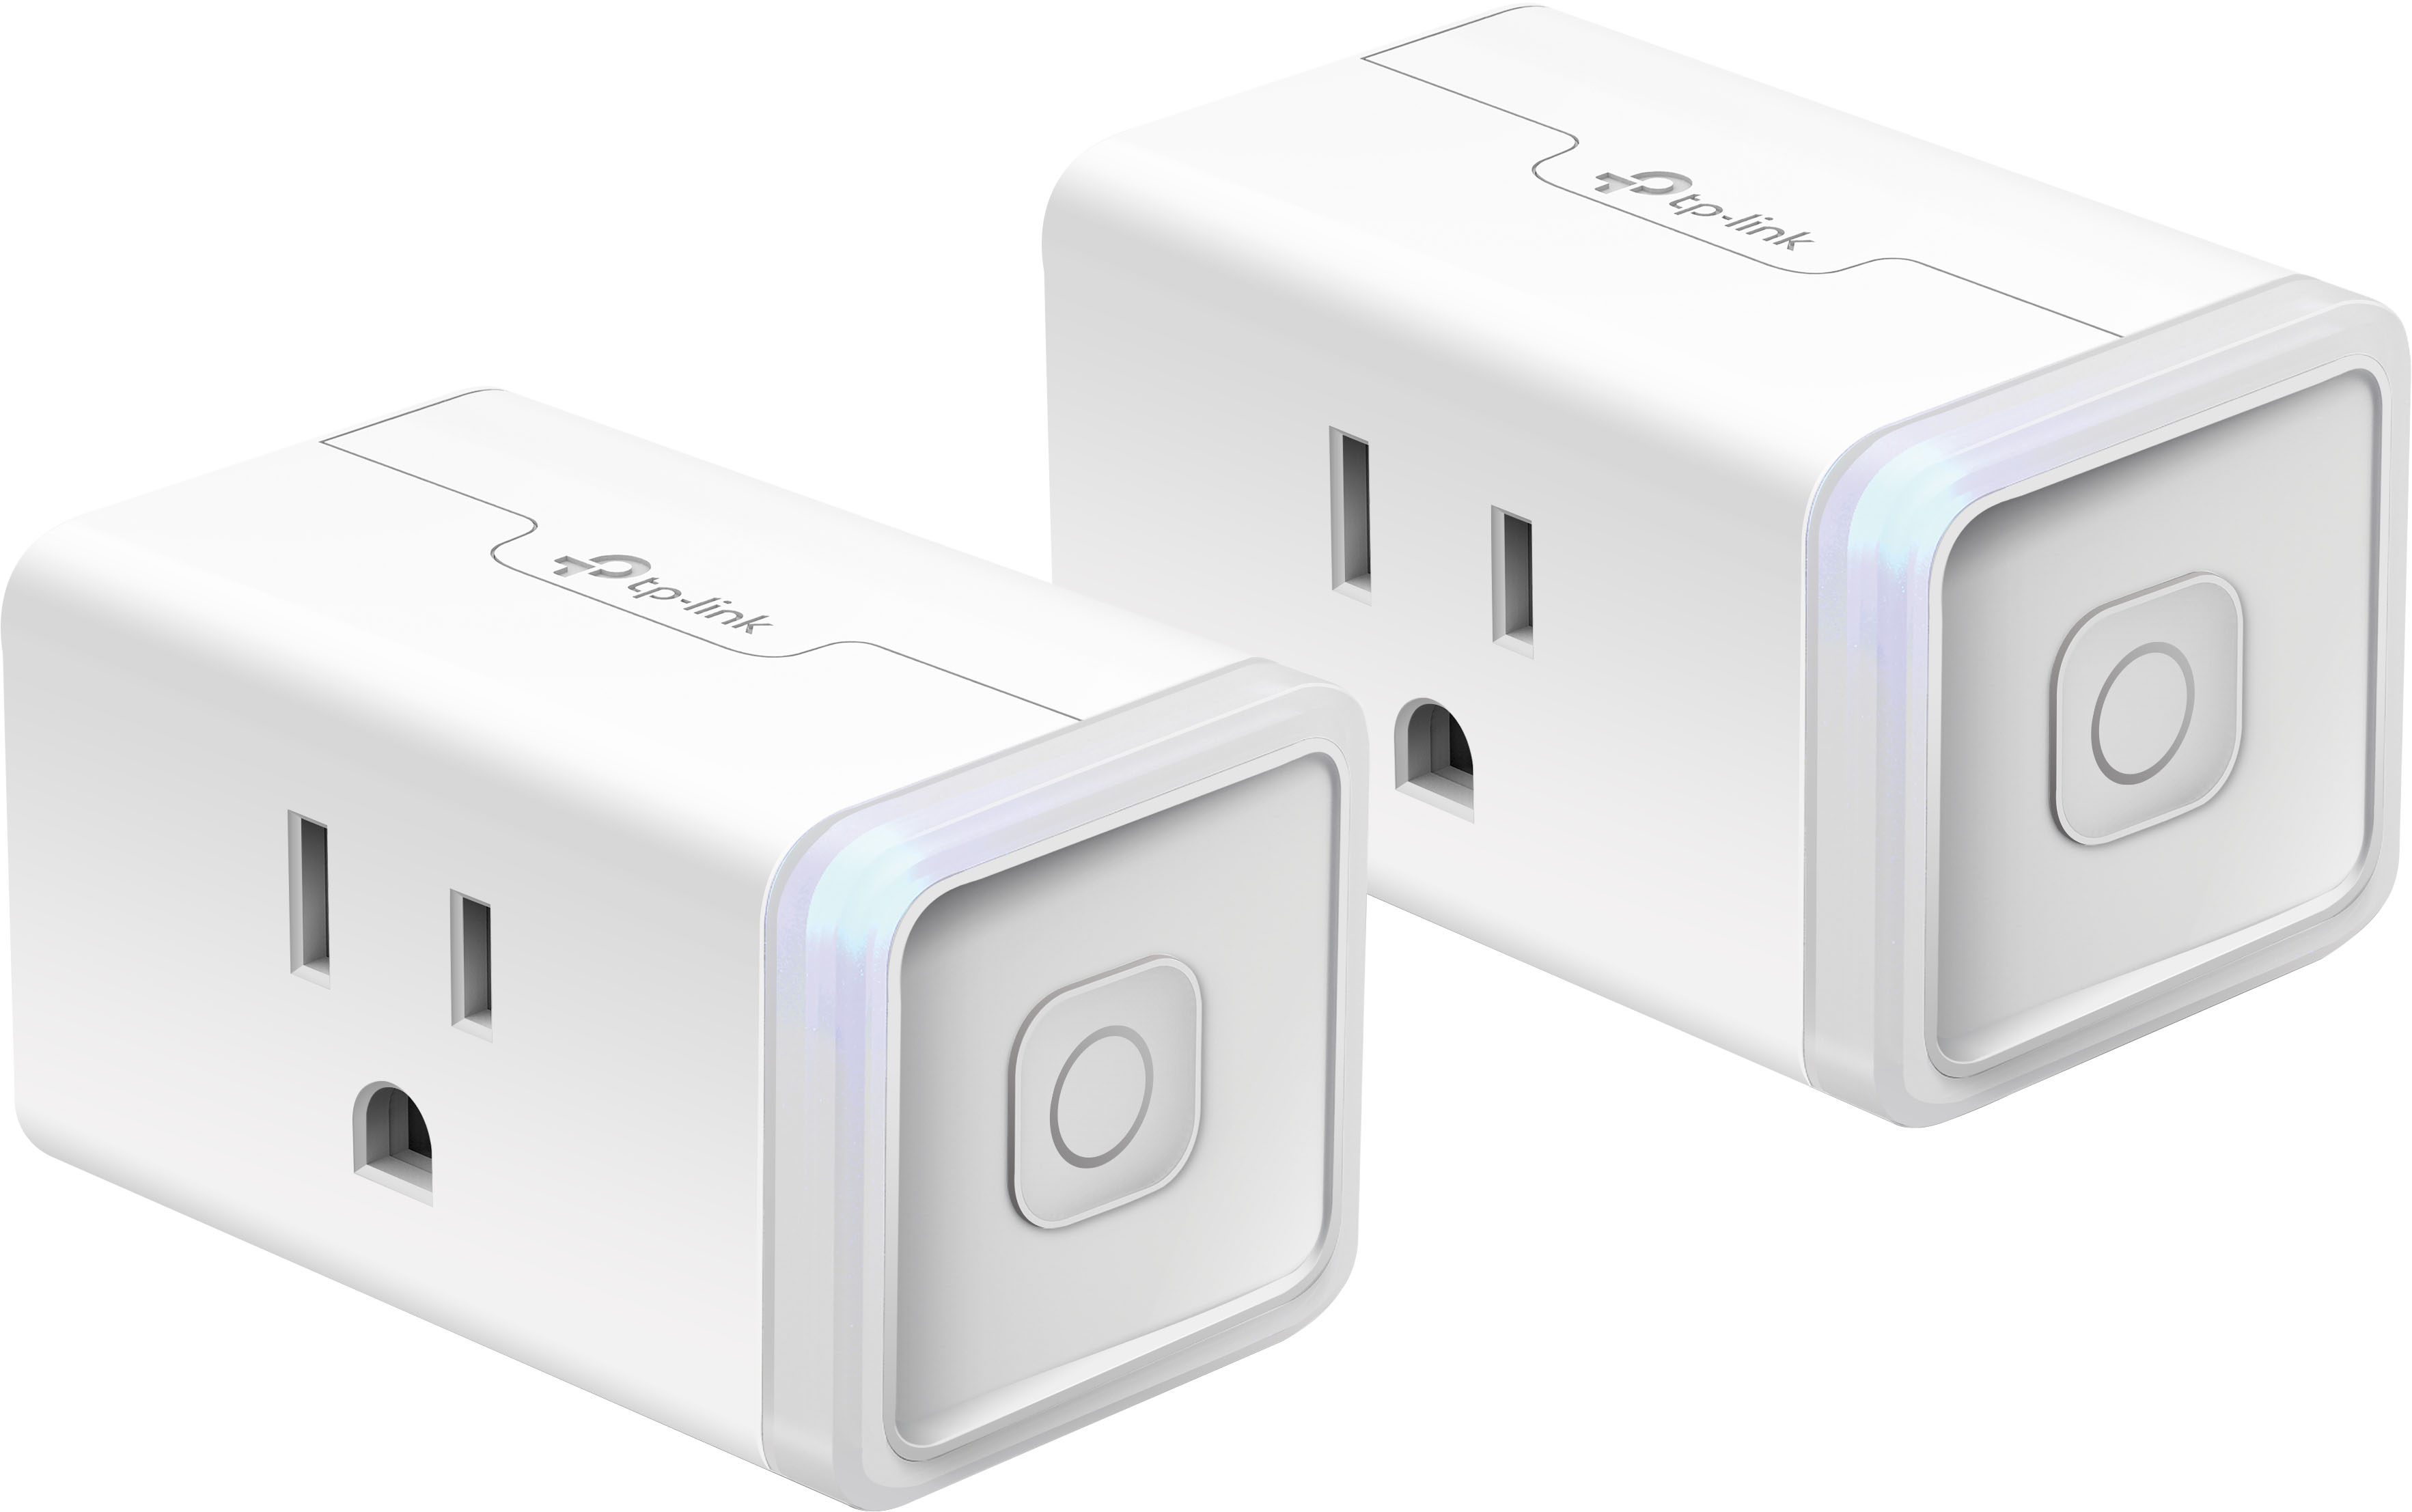 Kasa Smart Plug With Matter Now Available - Homekit News and